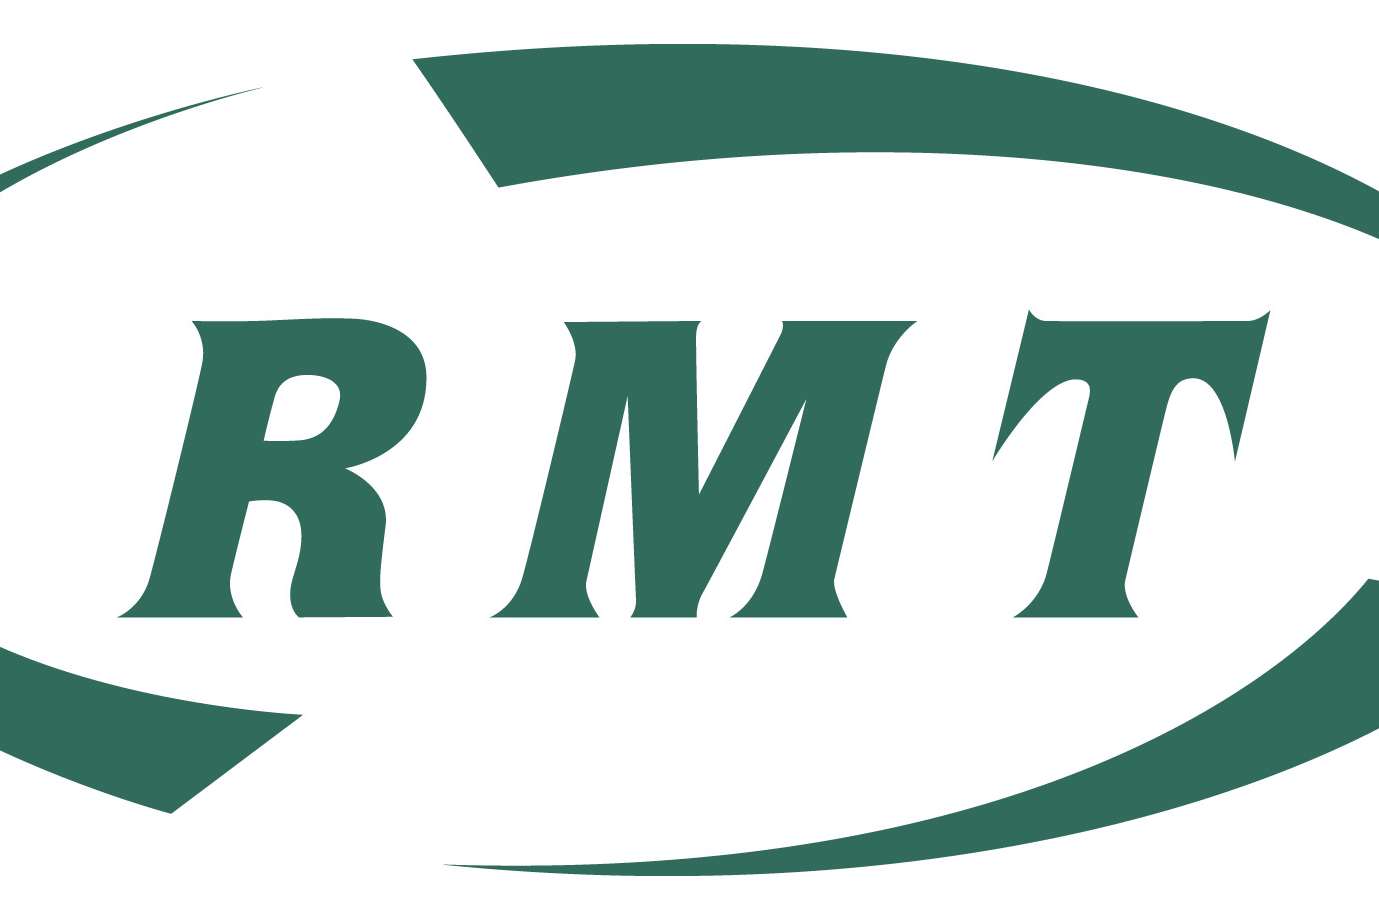 RMT logo